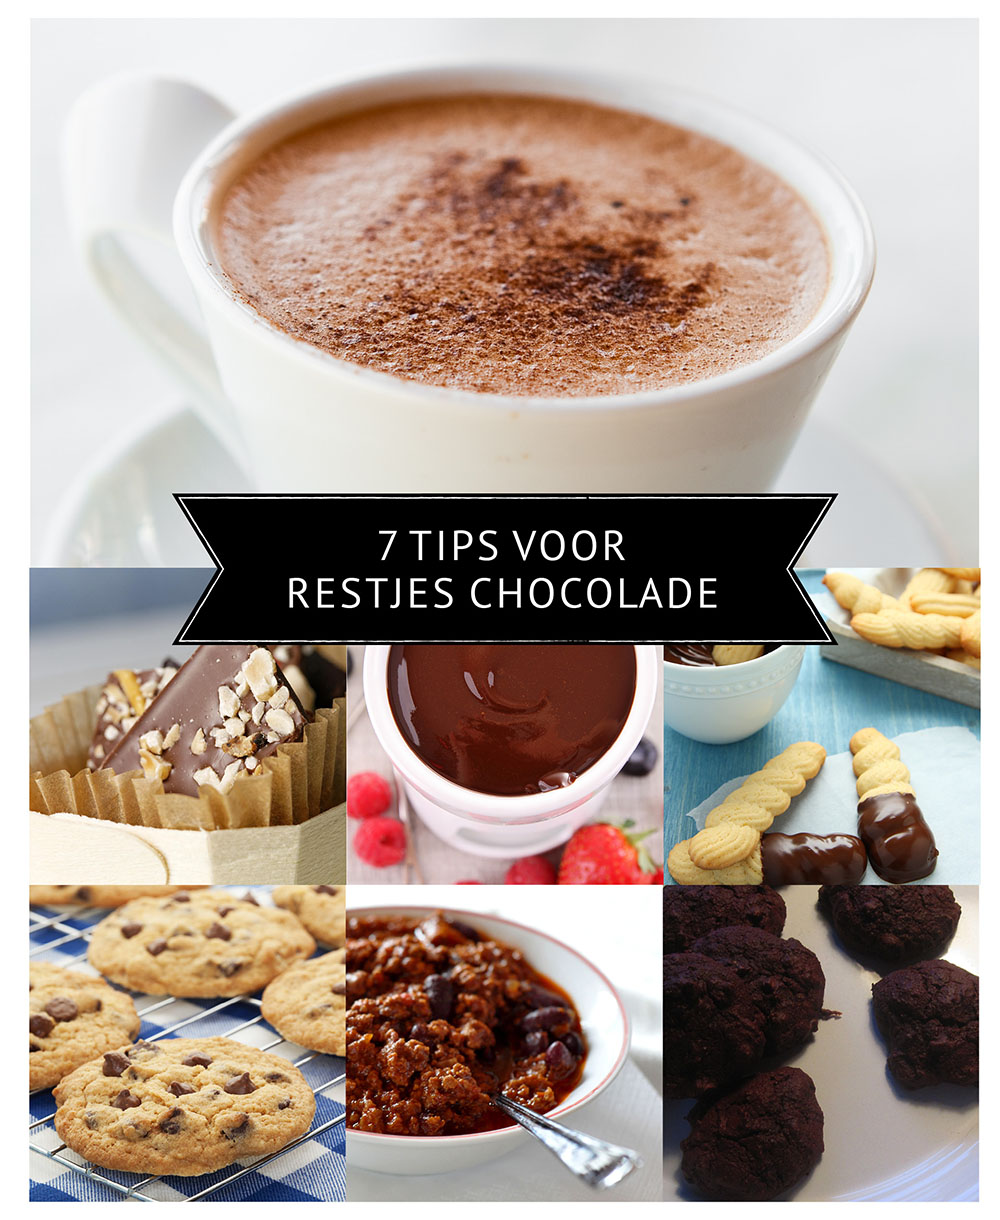 Empty the Fridge - 7 tips voor een restje chocolade